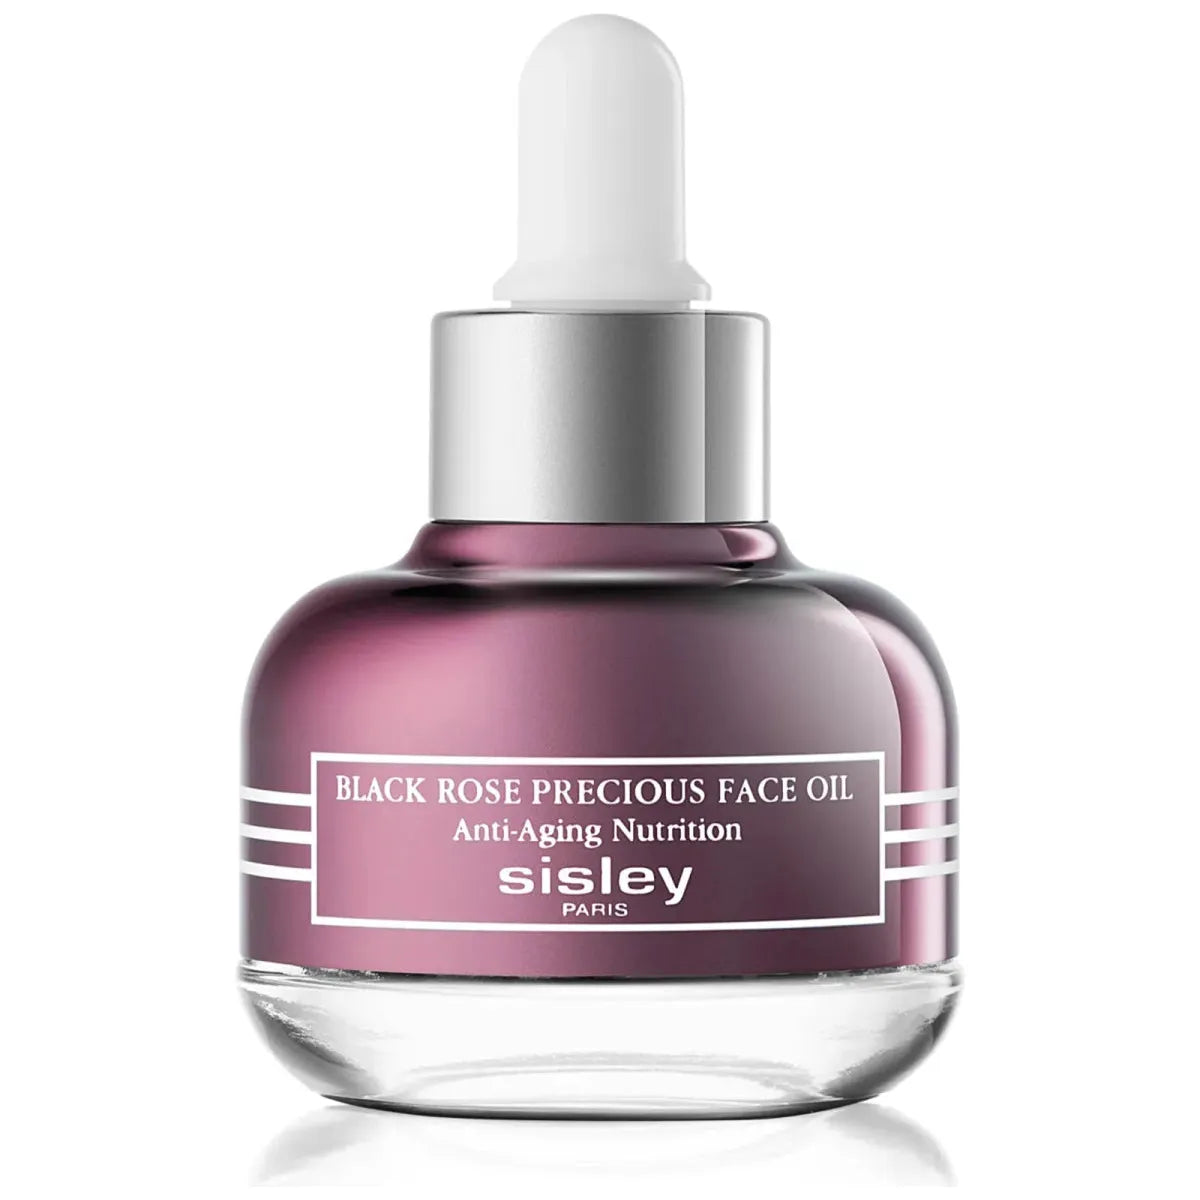 Sisley Black Rose Precious Face Oil - 25ml - Glam Global UK